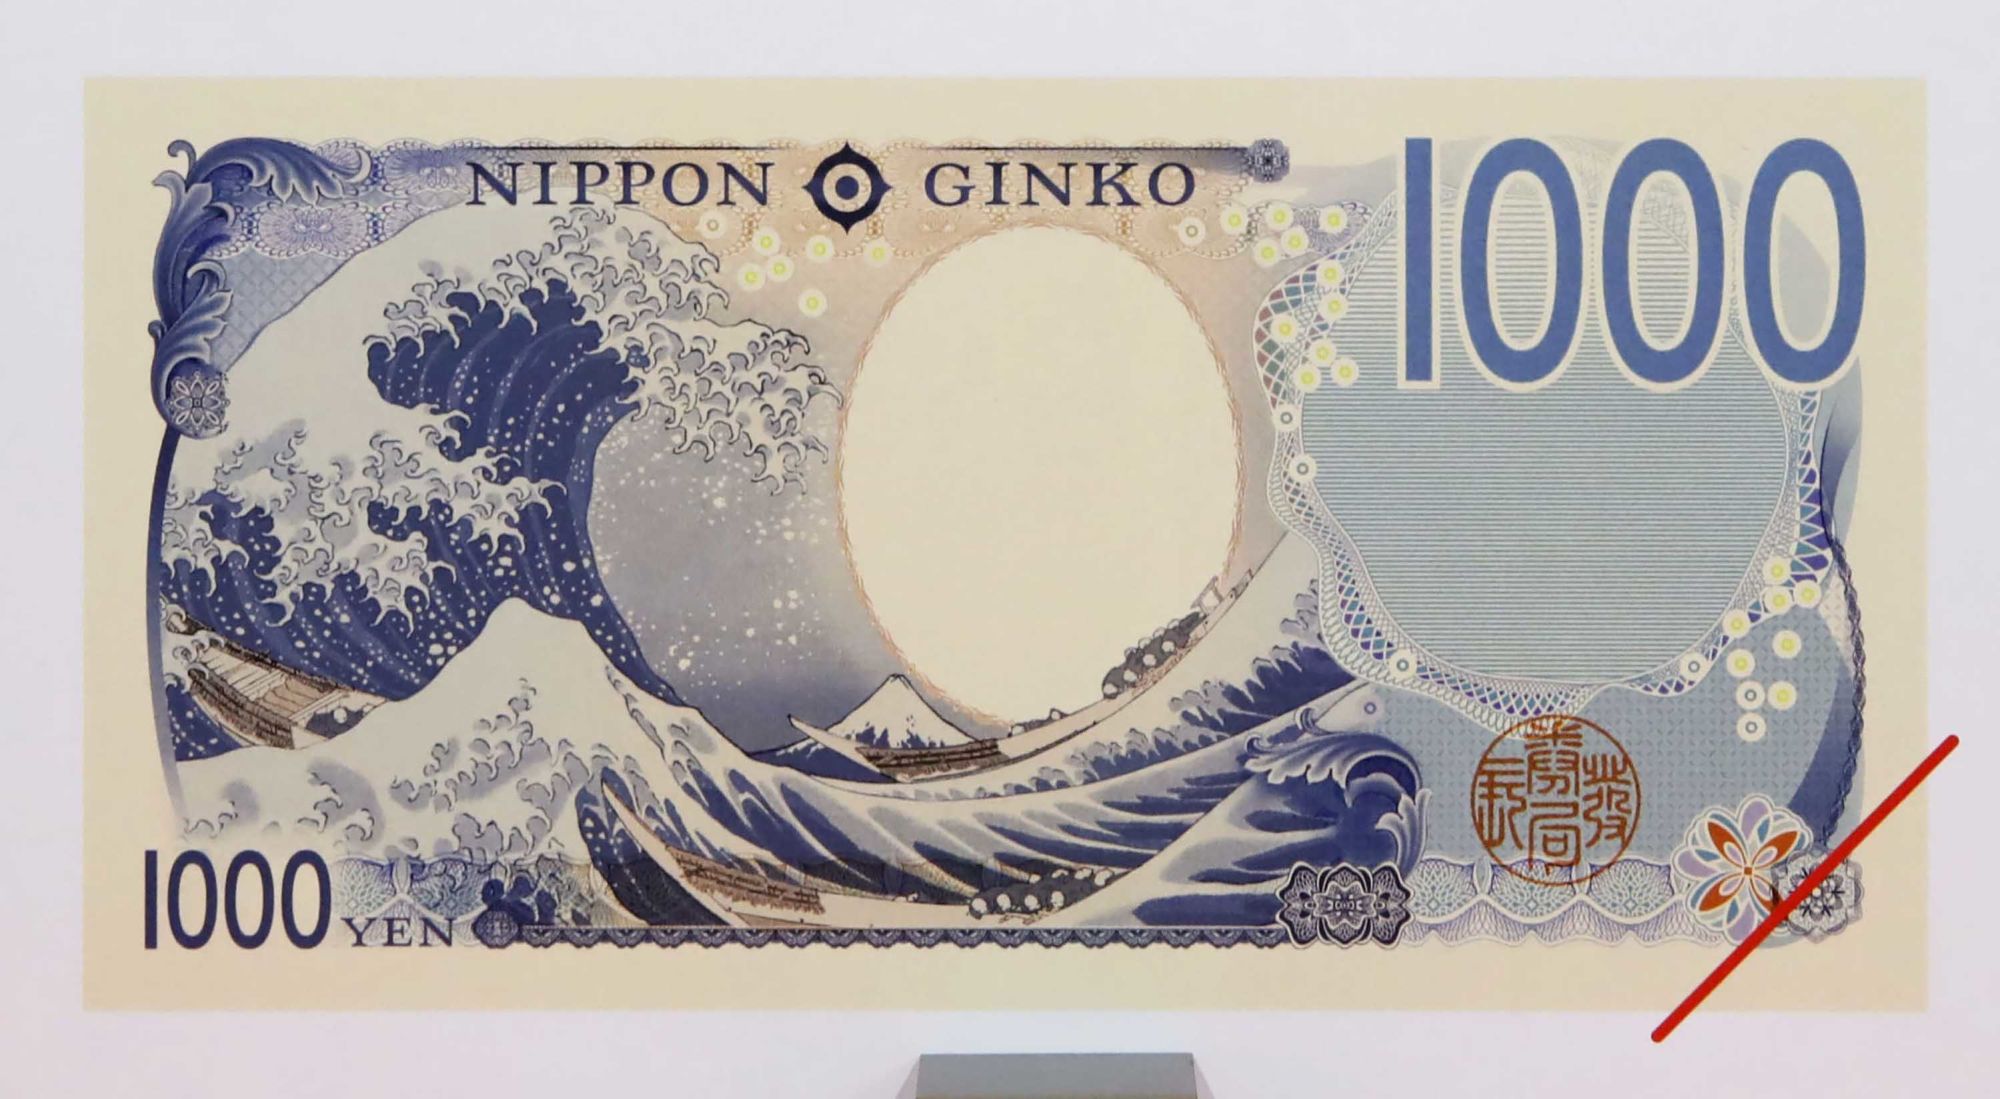 01 new Japanese yen RESTRICTED